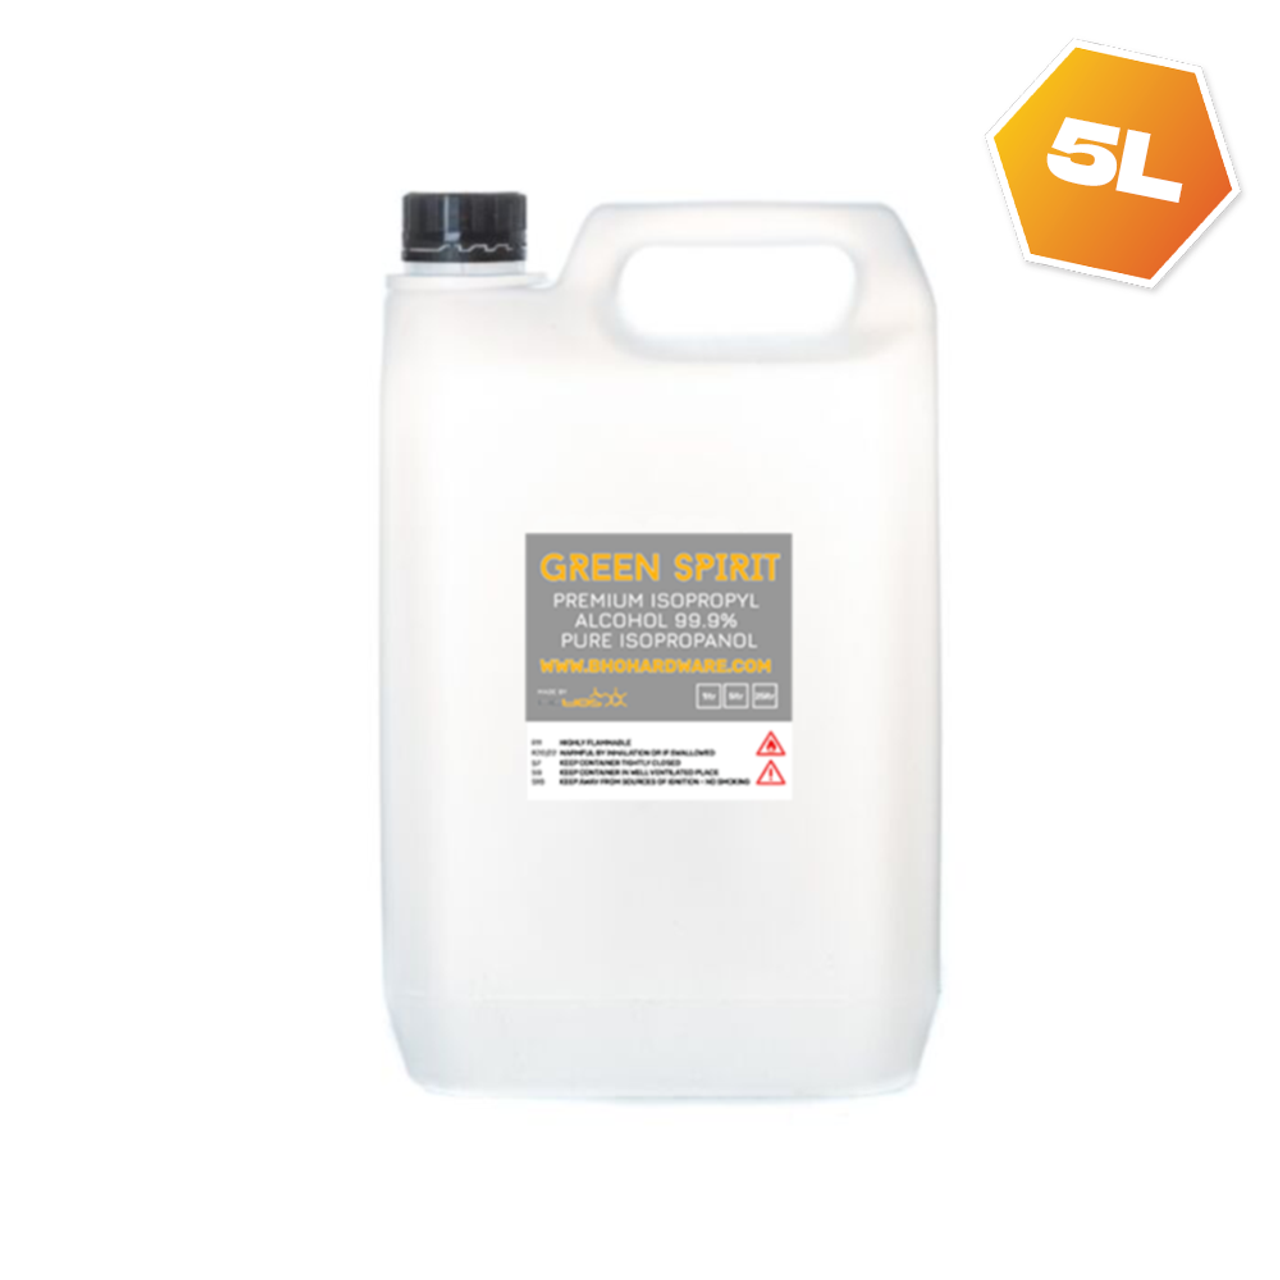 5L Premium Isopropyl Alcohol 99.9% Pure Isopropanol